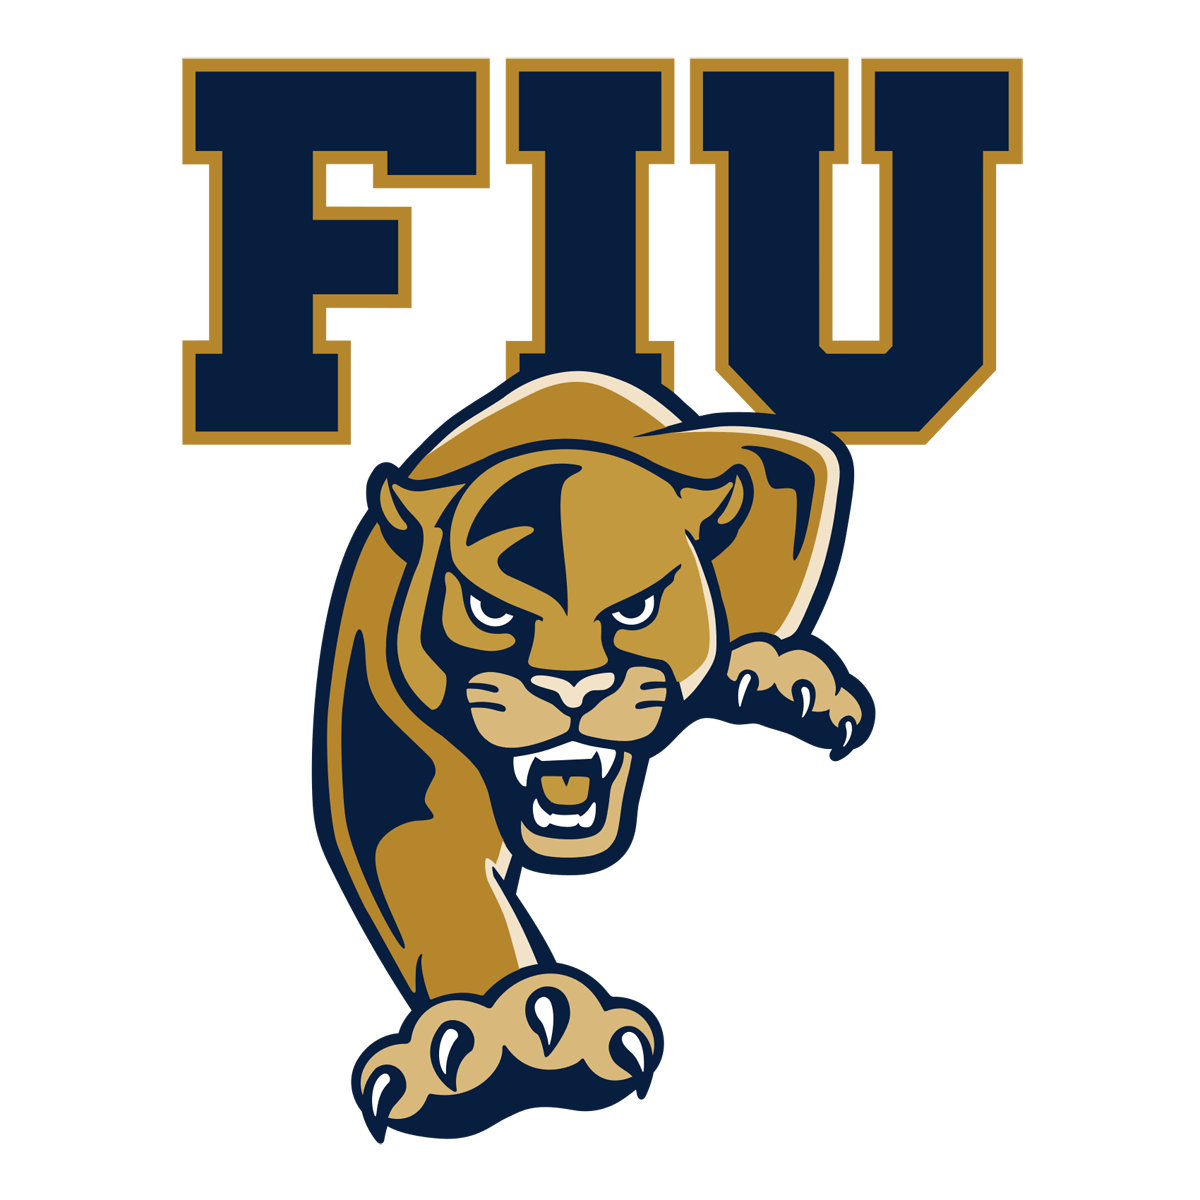 Florida International (FIU) Panthers logo